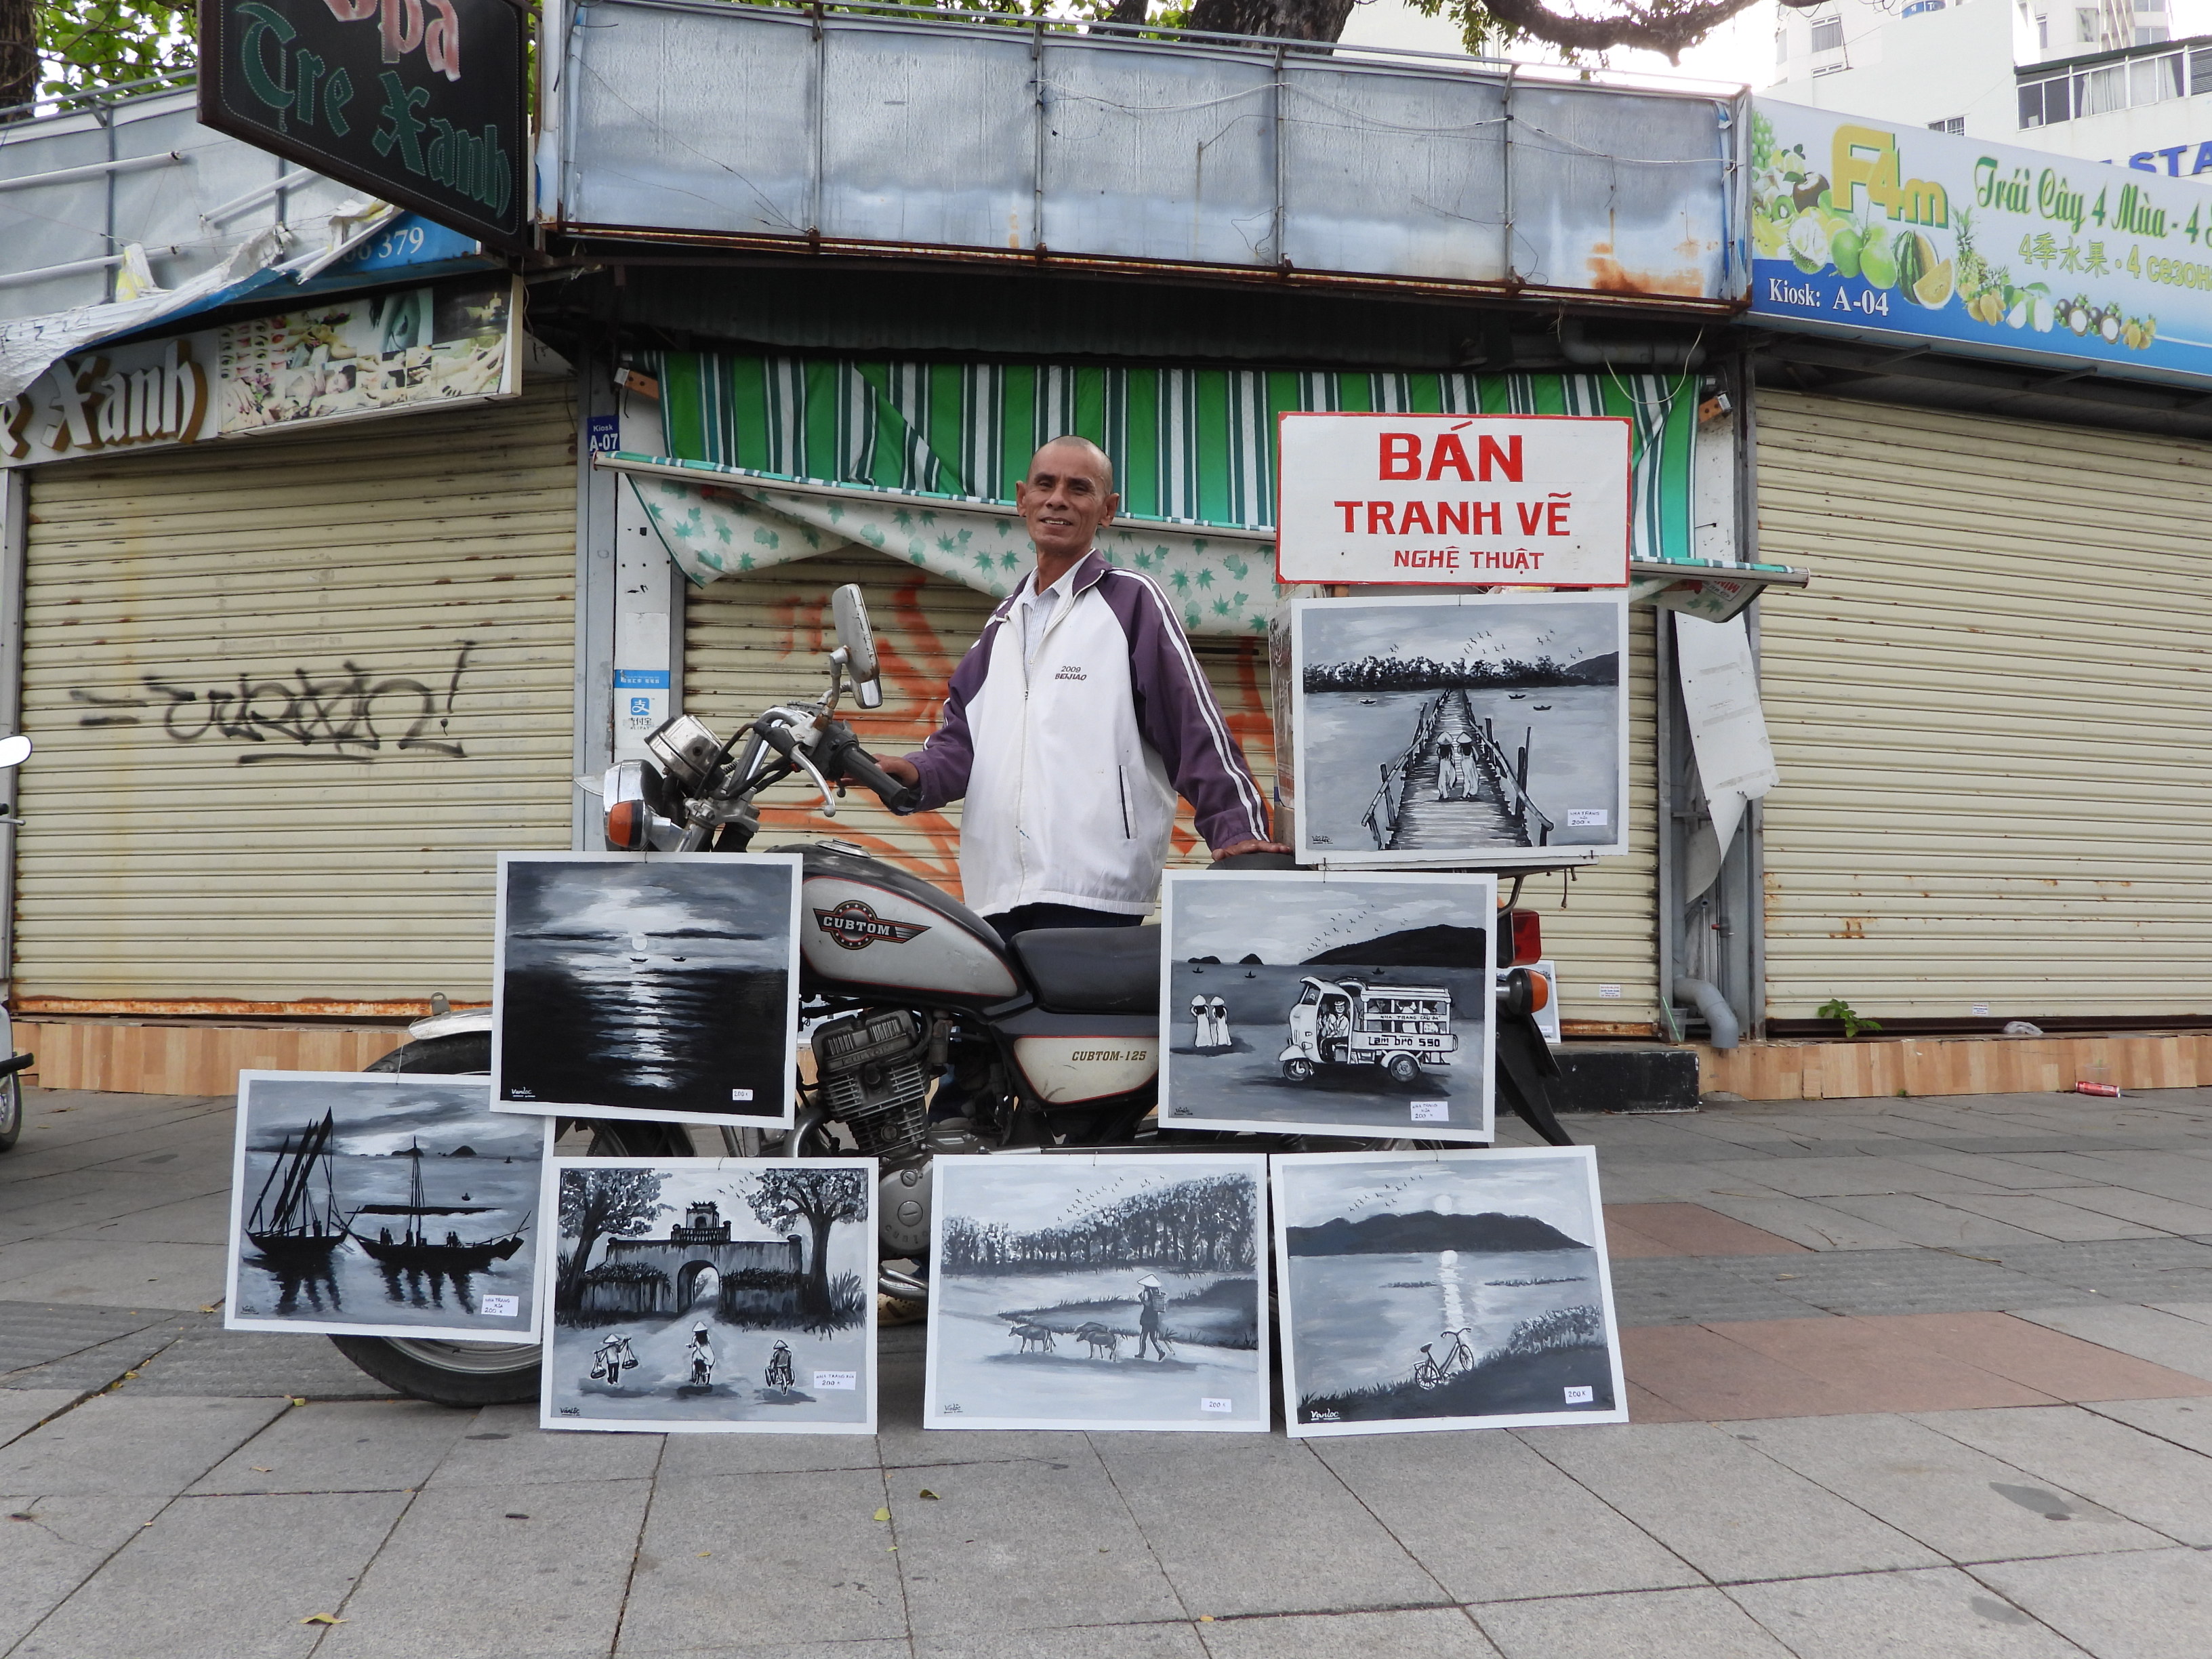 Chàng họa sĩ đường phố vẽ tranh sơn dầu trắng đen ở phố biển Nha Trang